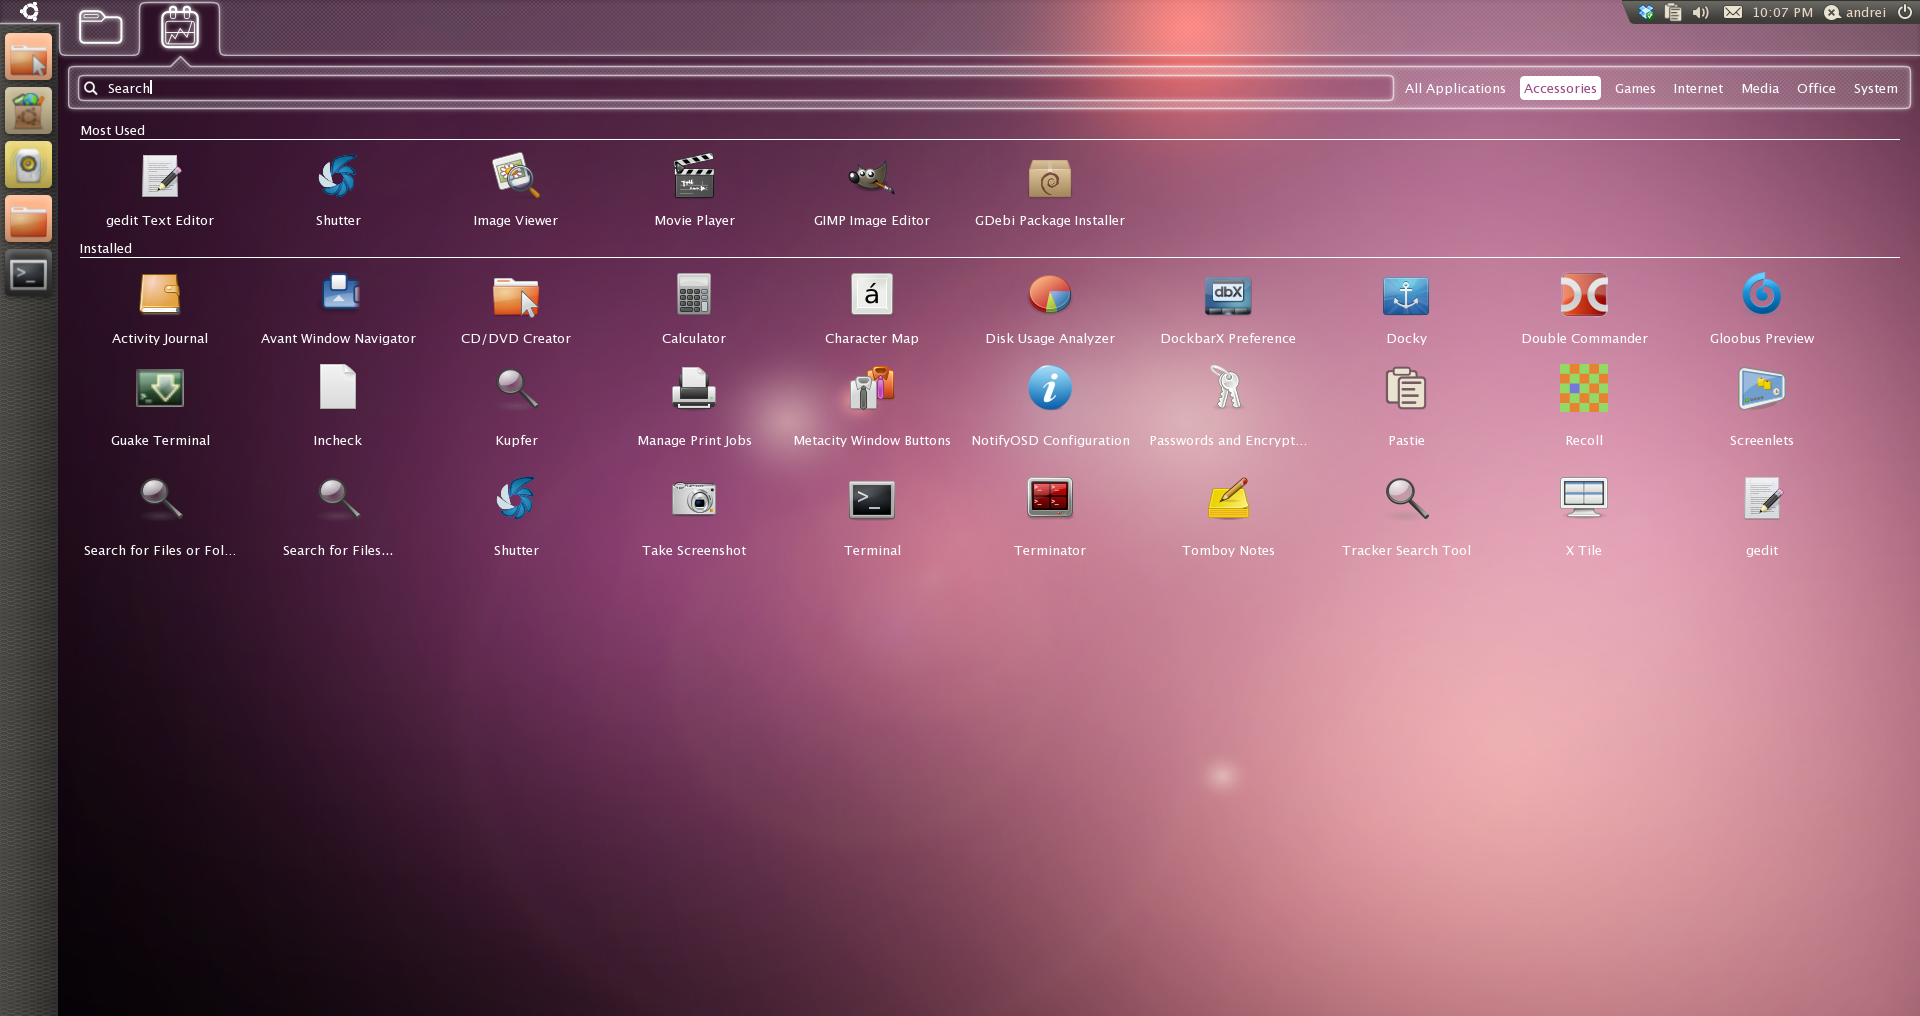 The Unity Launcher Looks Gorgeous Ubuntu Netbook Edition 10 10 Web Upd8 Ubuntu Linux Blog